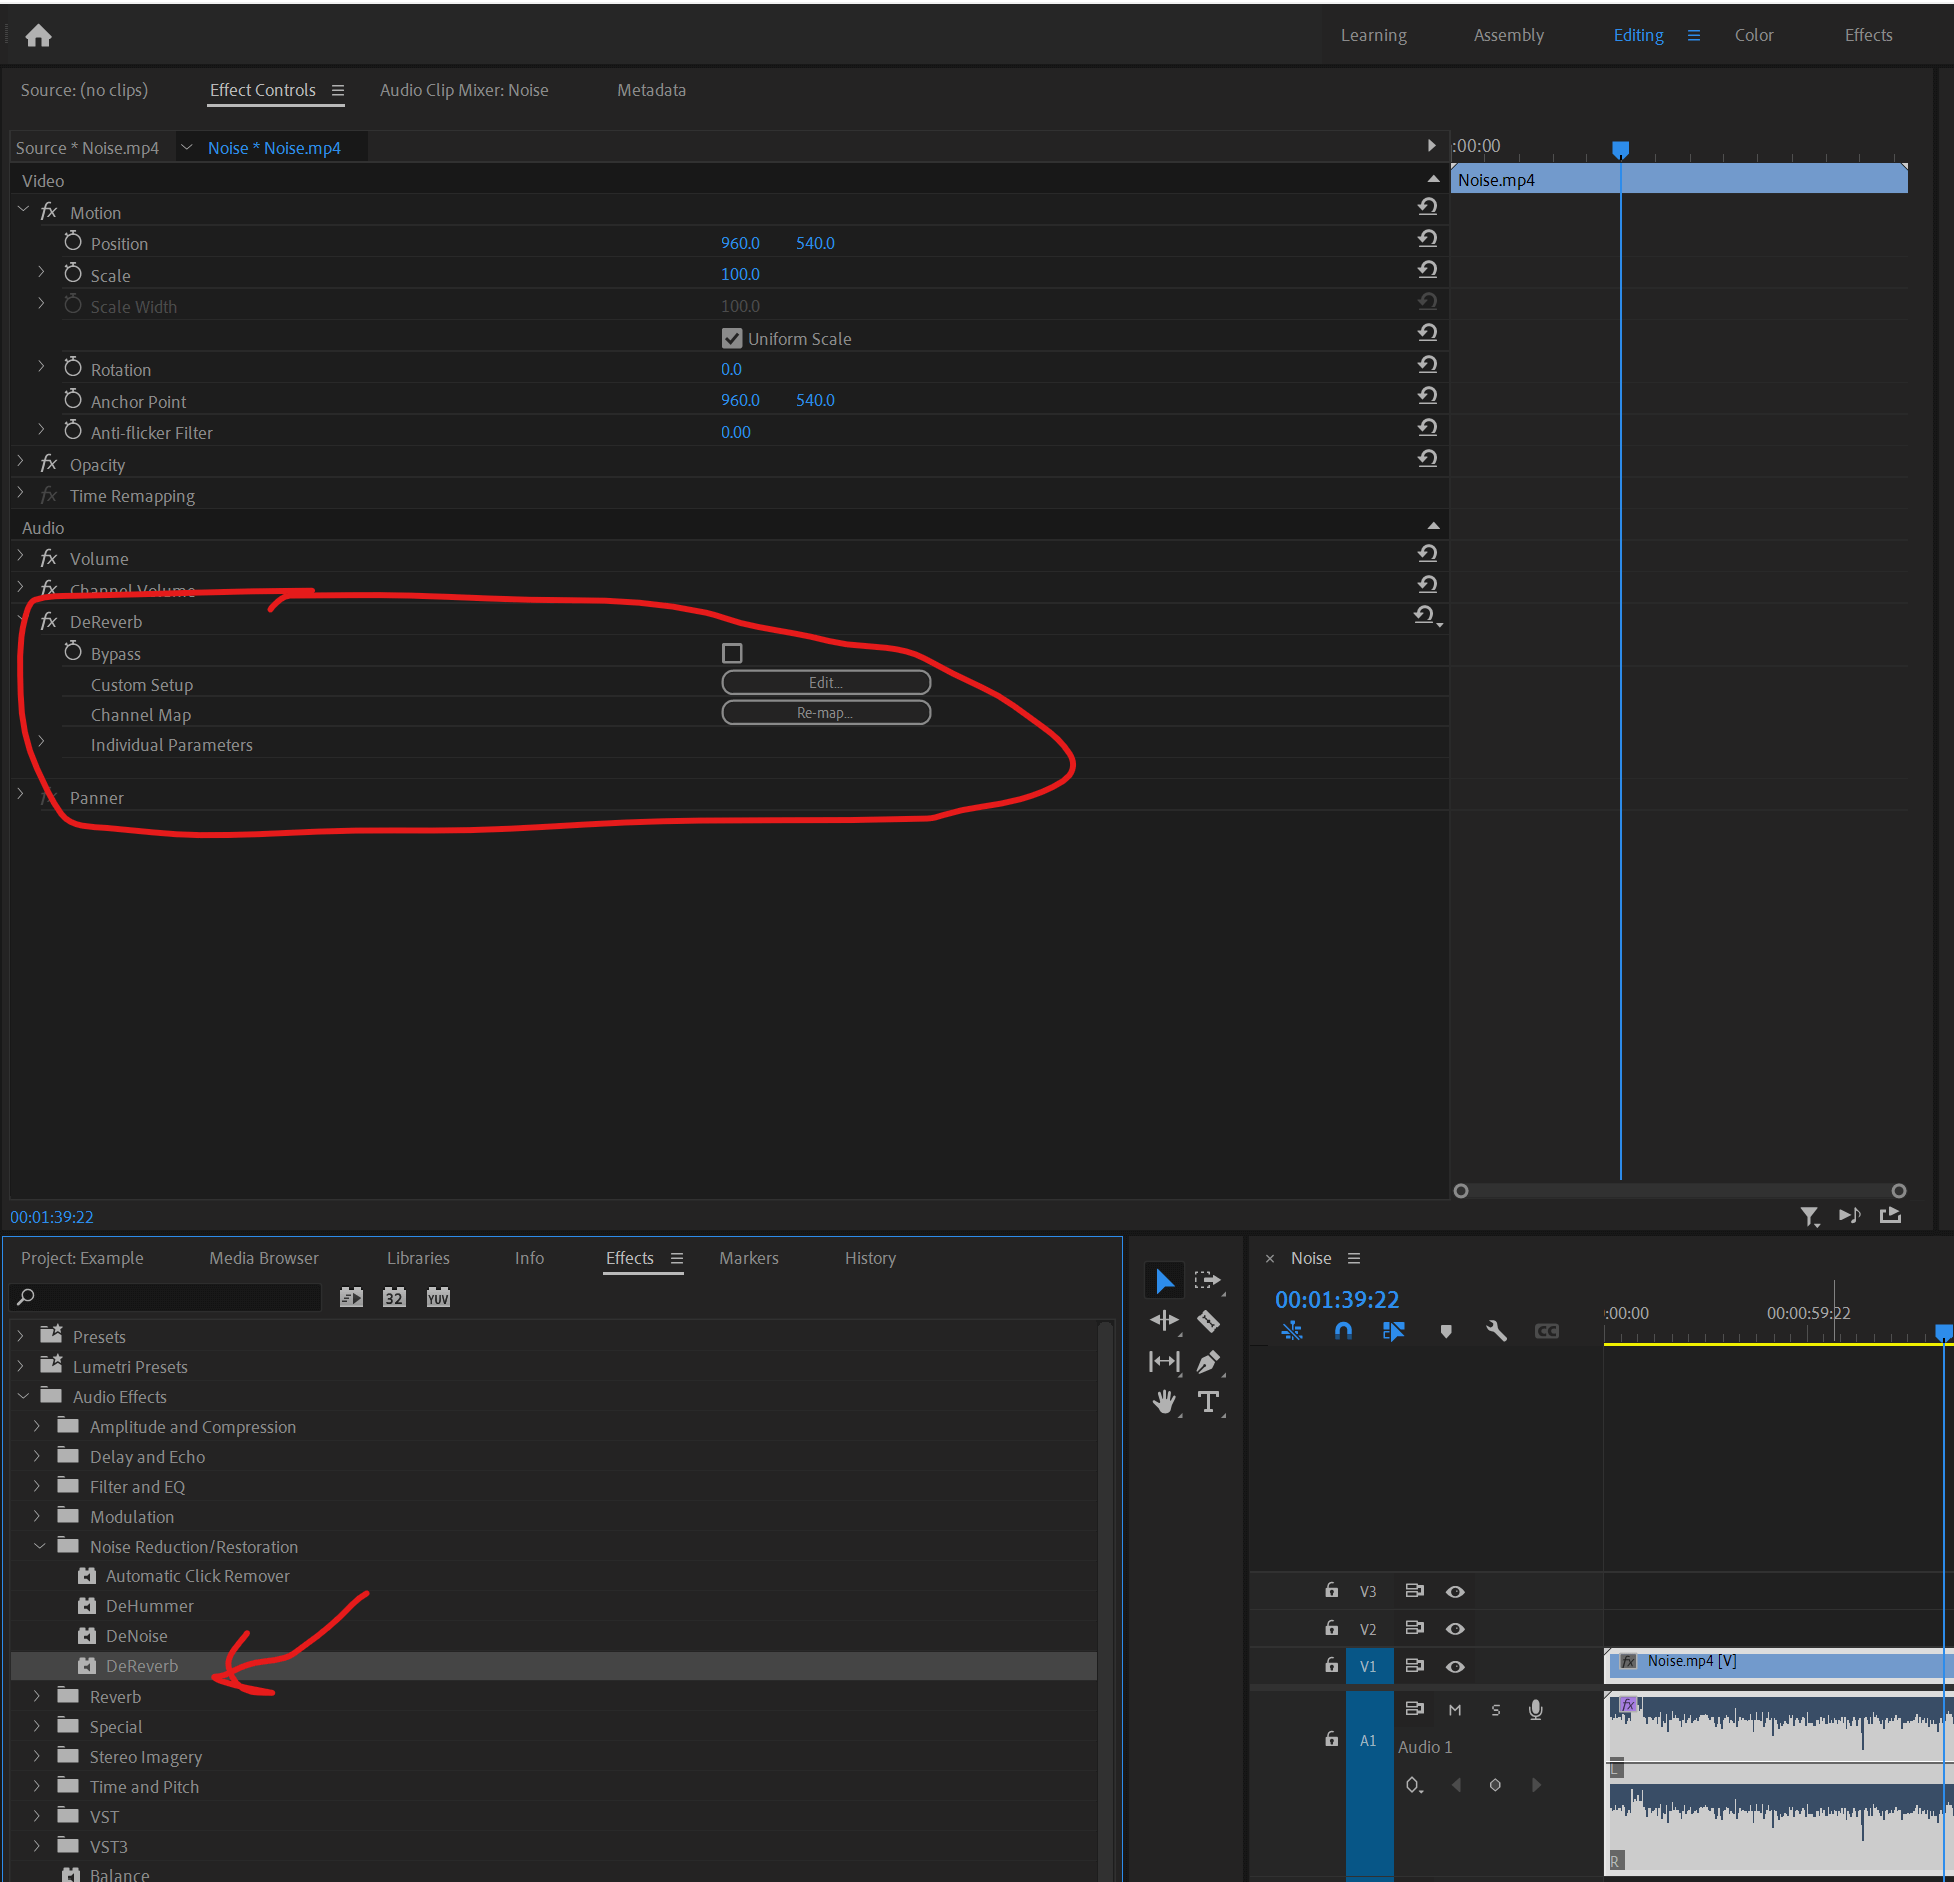 How to Remove Echo in Premiere Pro Audio Editing remove echo Music Radio Creative